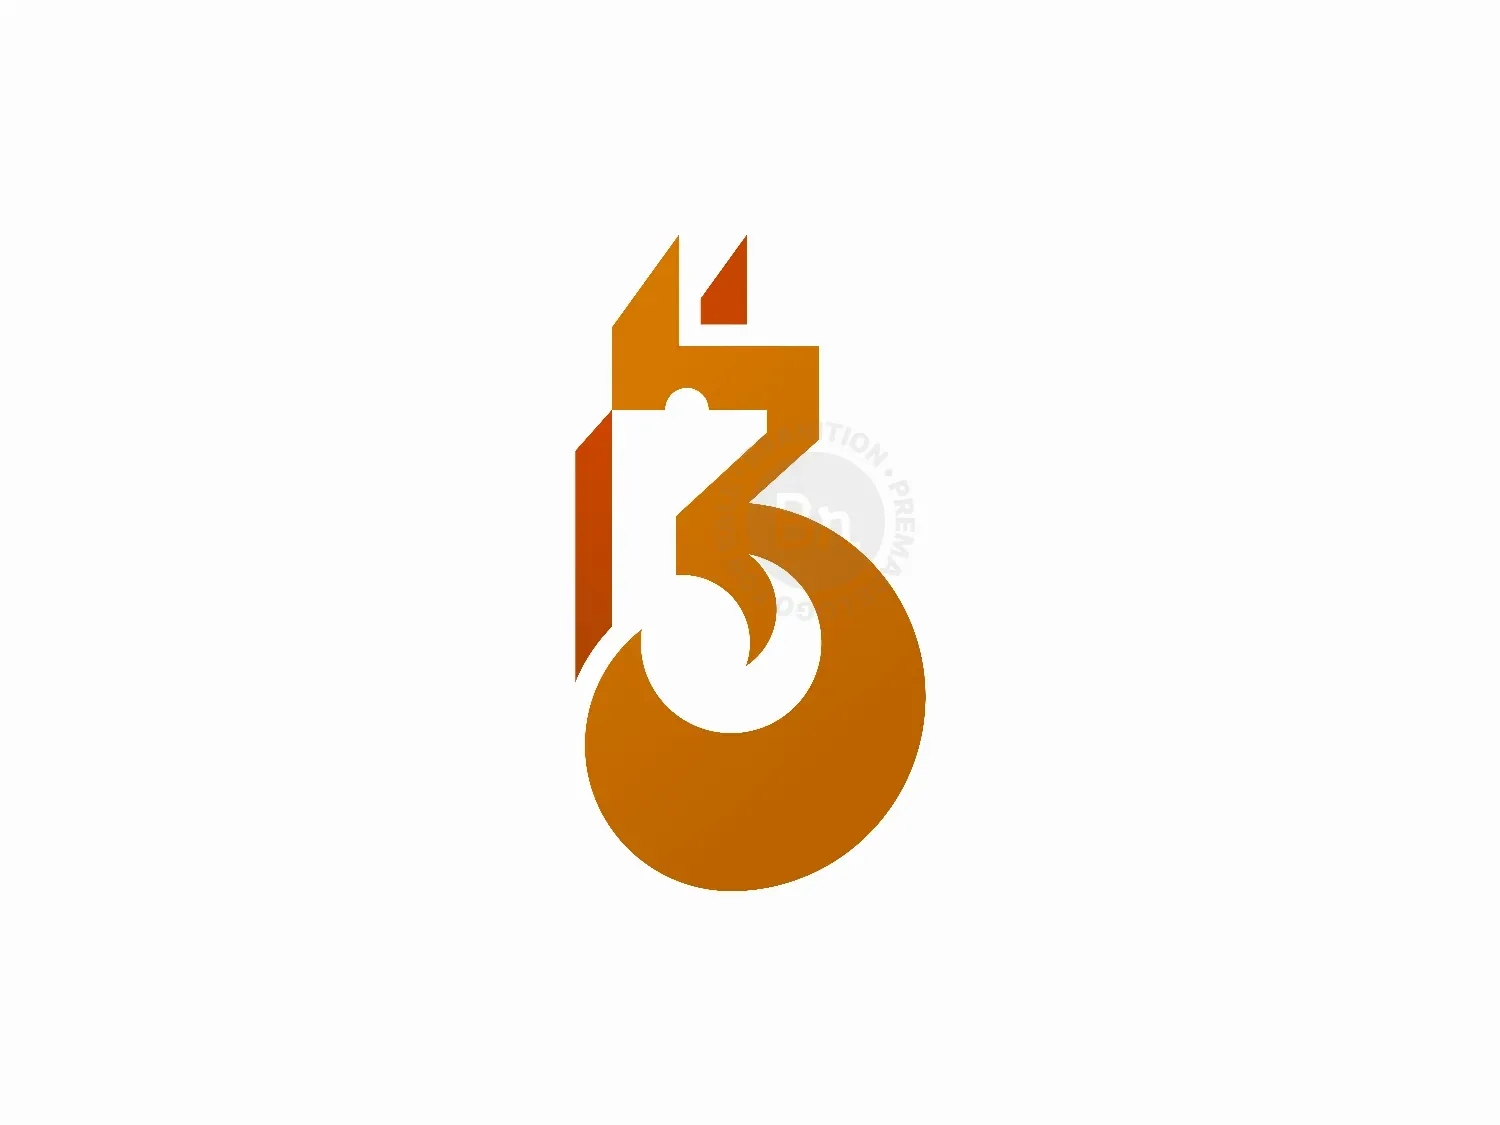 Number 3 Logos - 55+ Best Number 3 Logo Ideas. Free Number 3 Logo Maker. |  99designs